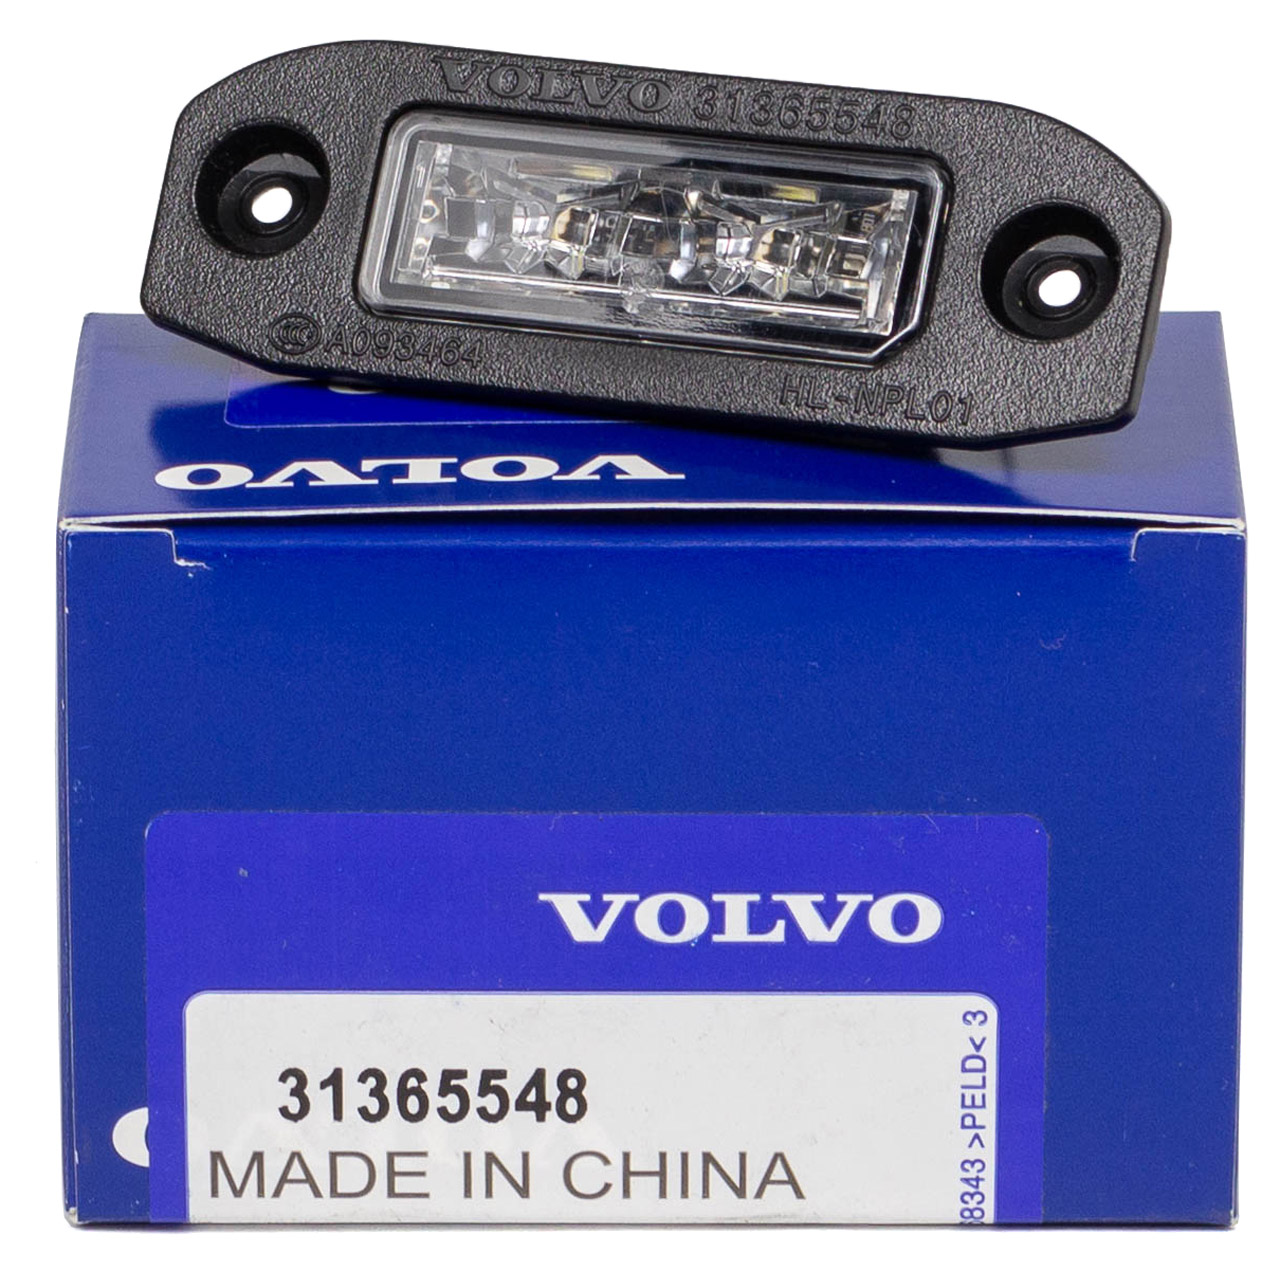 ORIGINAL Volvo LED Kennzeichenleuchte Kennzeichenlicht XC60 I (156) 31365548